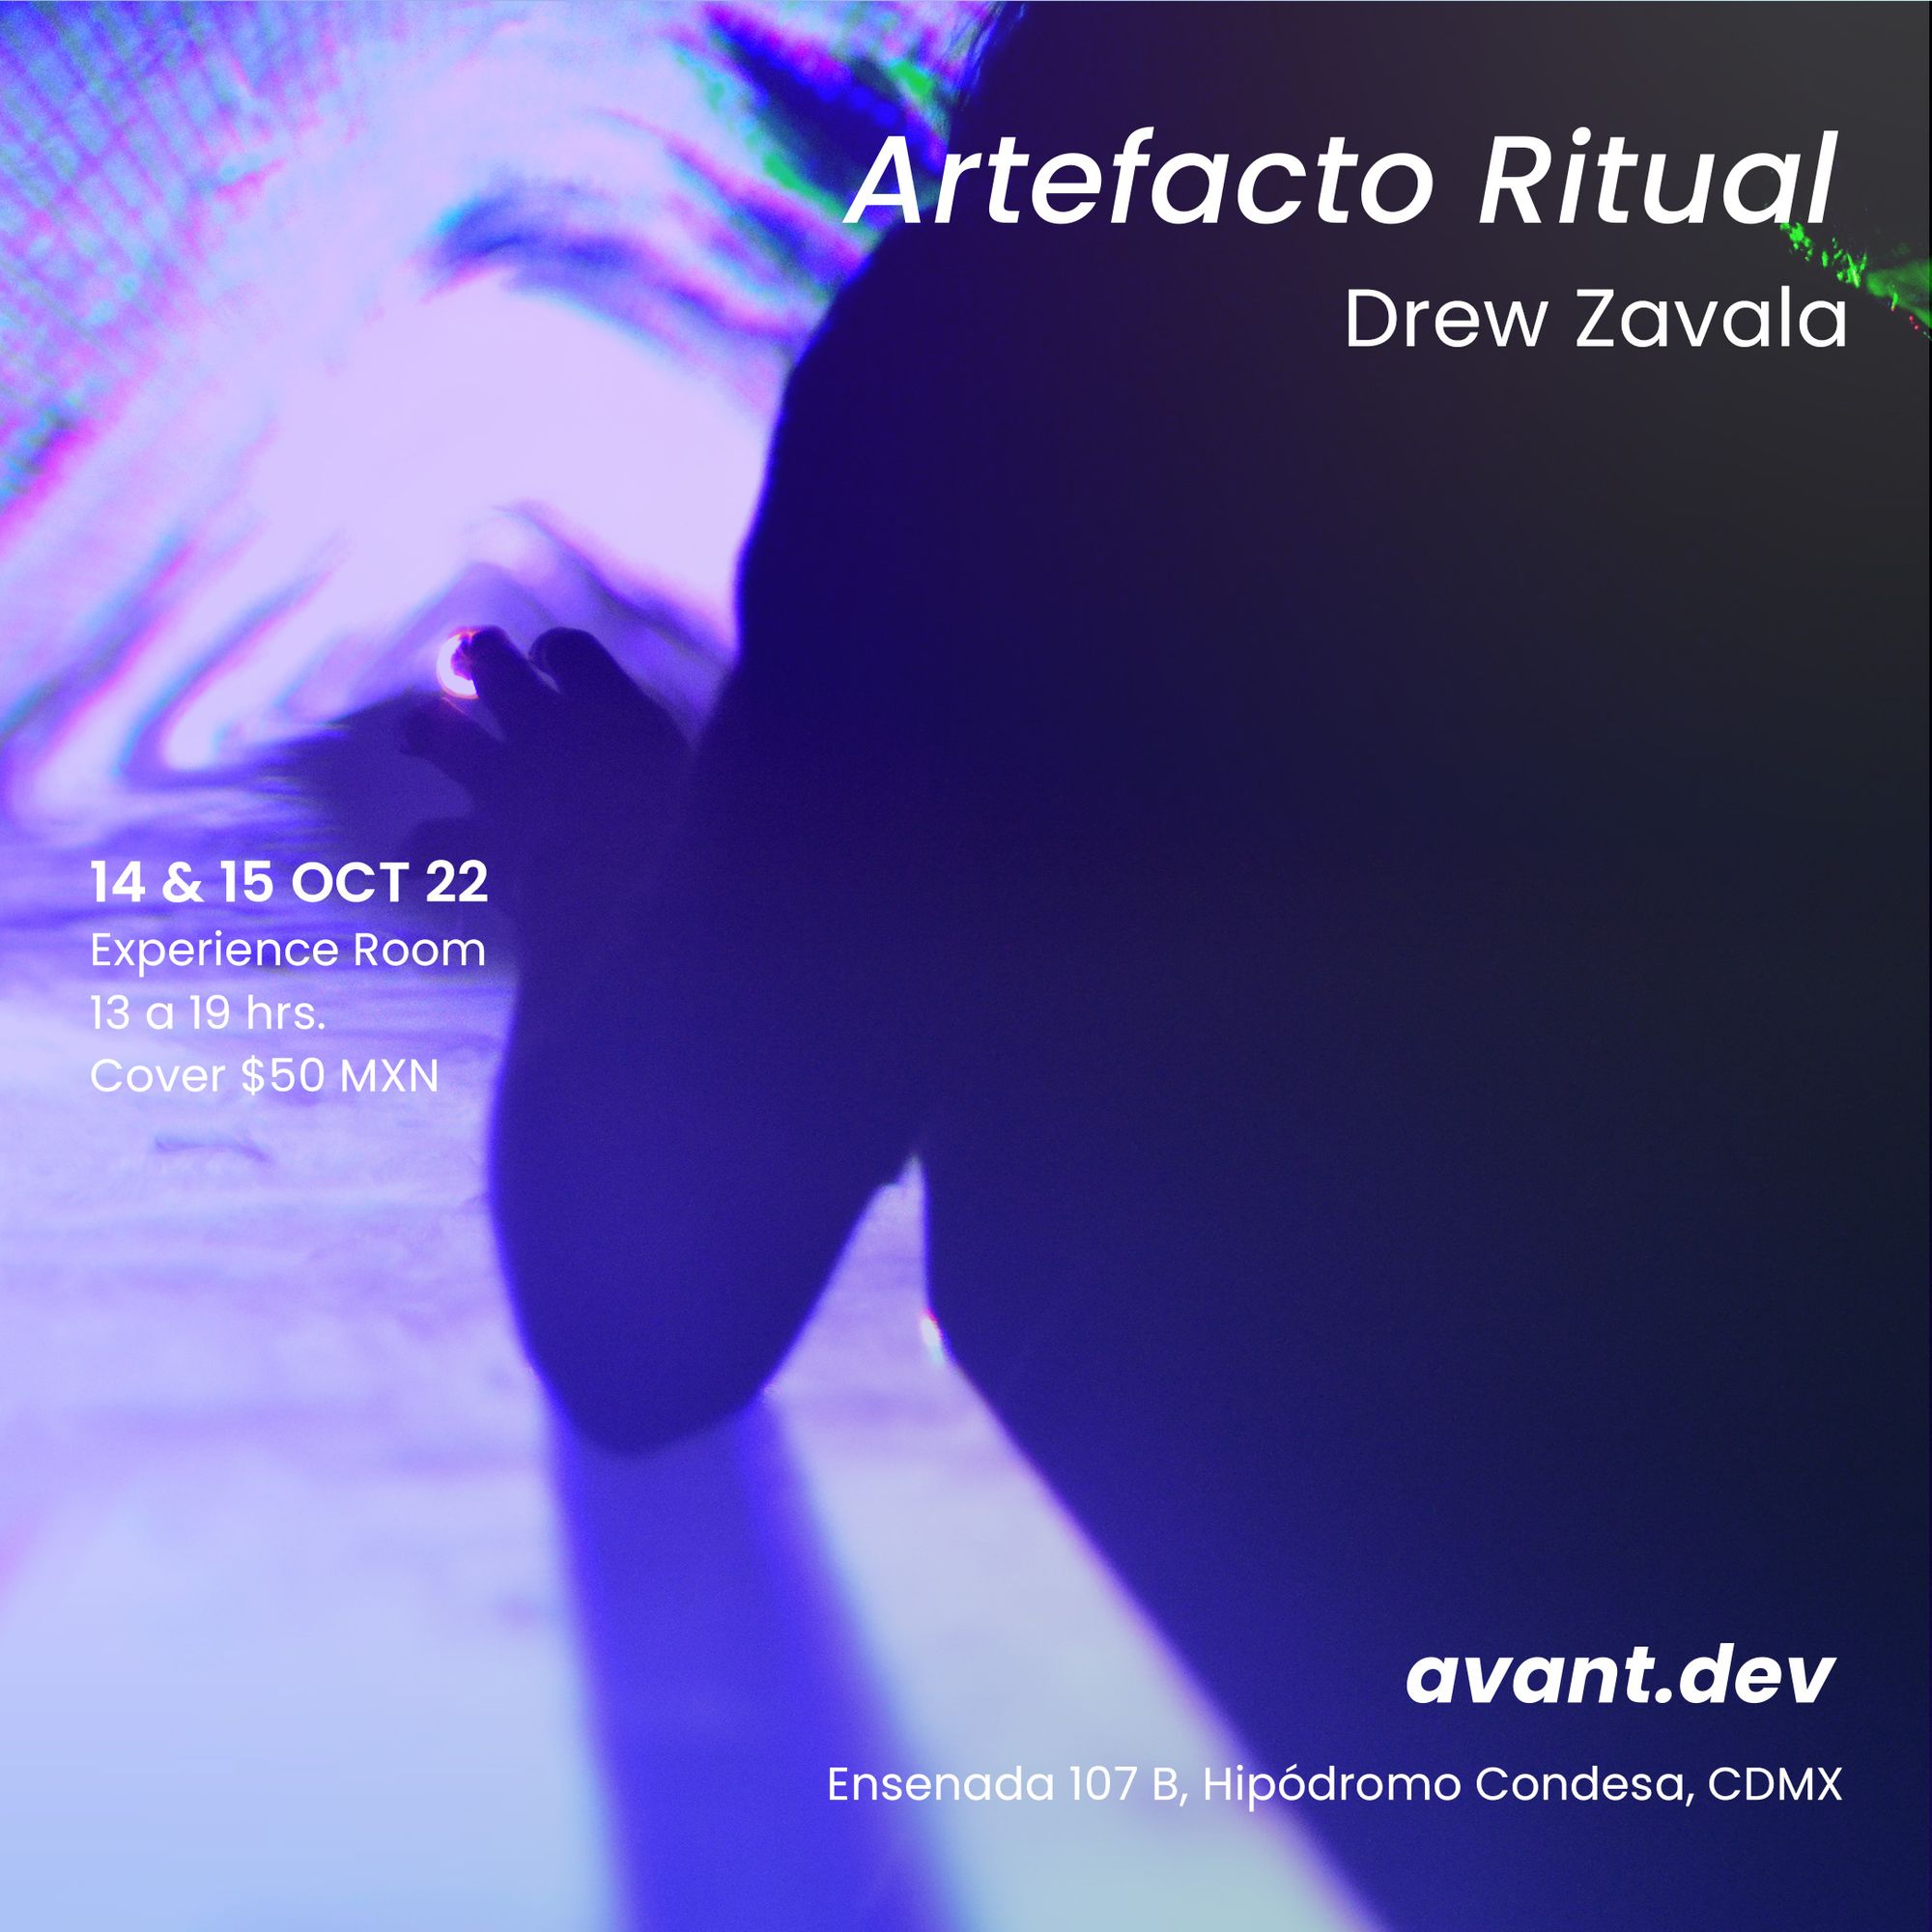 Artefacto Ritual x Drew Zavala